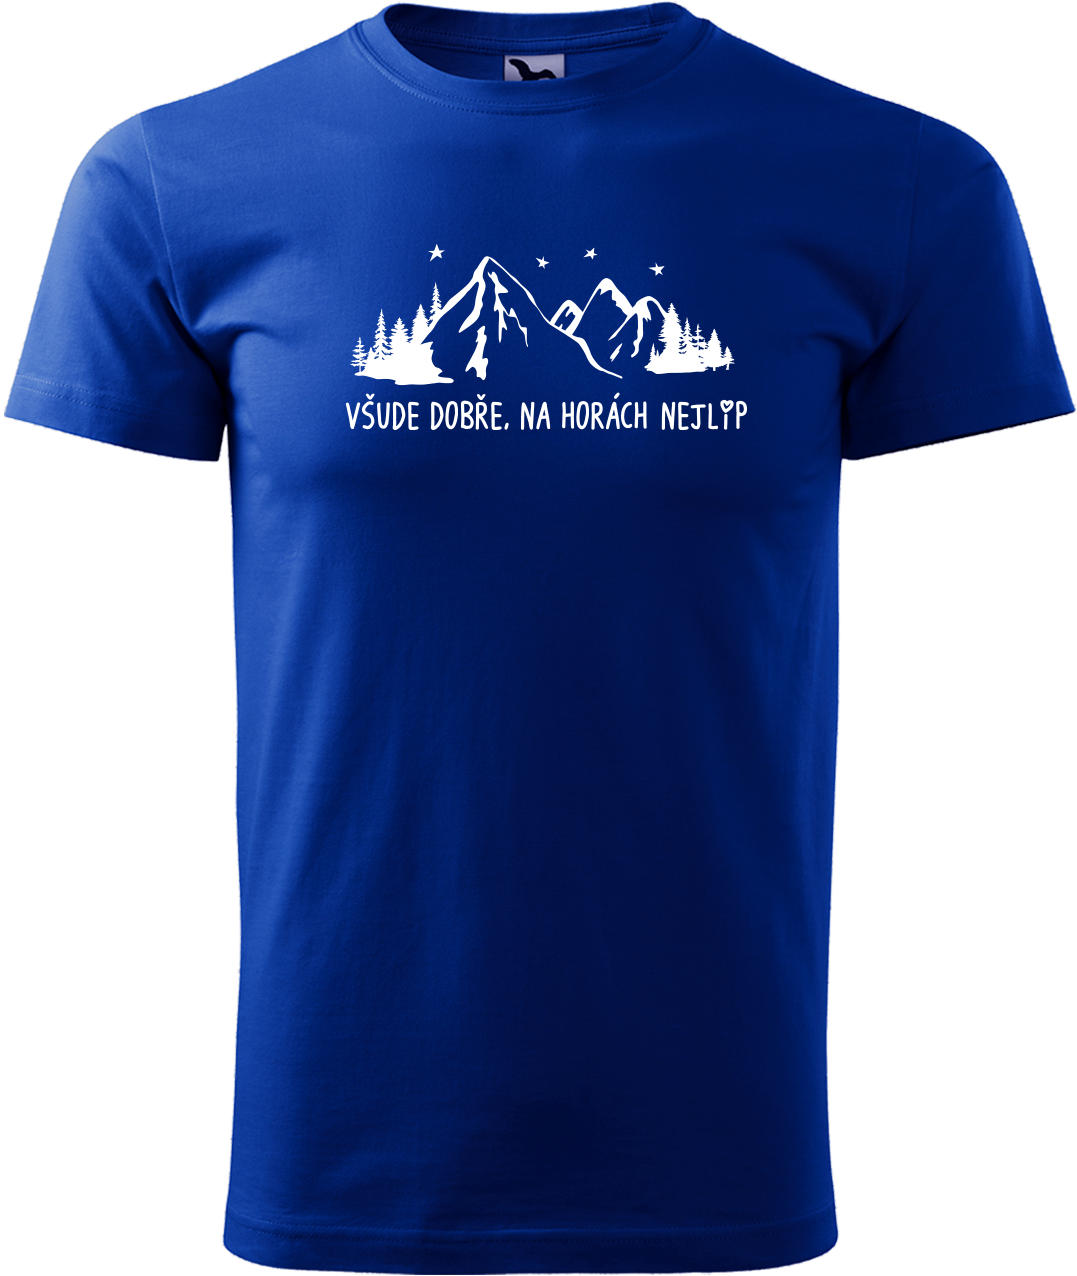 Pánské tričko na hory - Všude dobře, na horách nejlíp Velikost: S, Barva: Královská modrá (05)